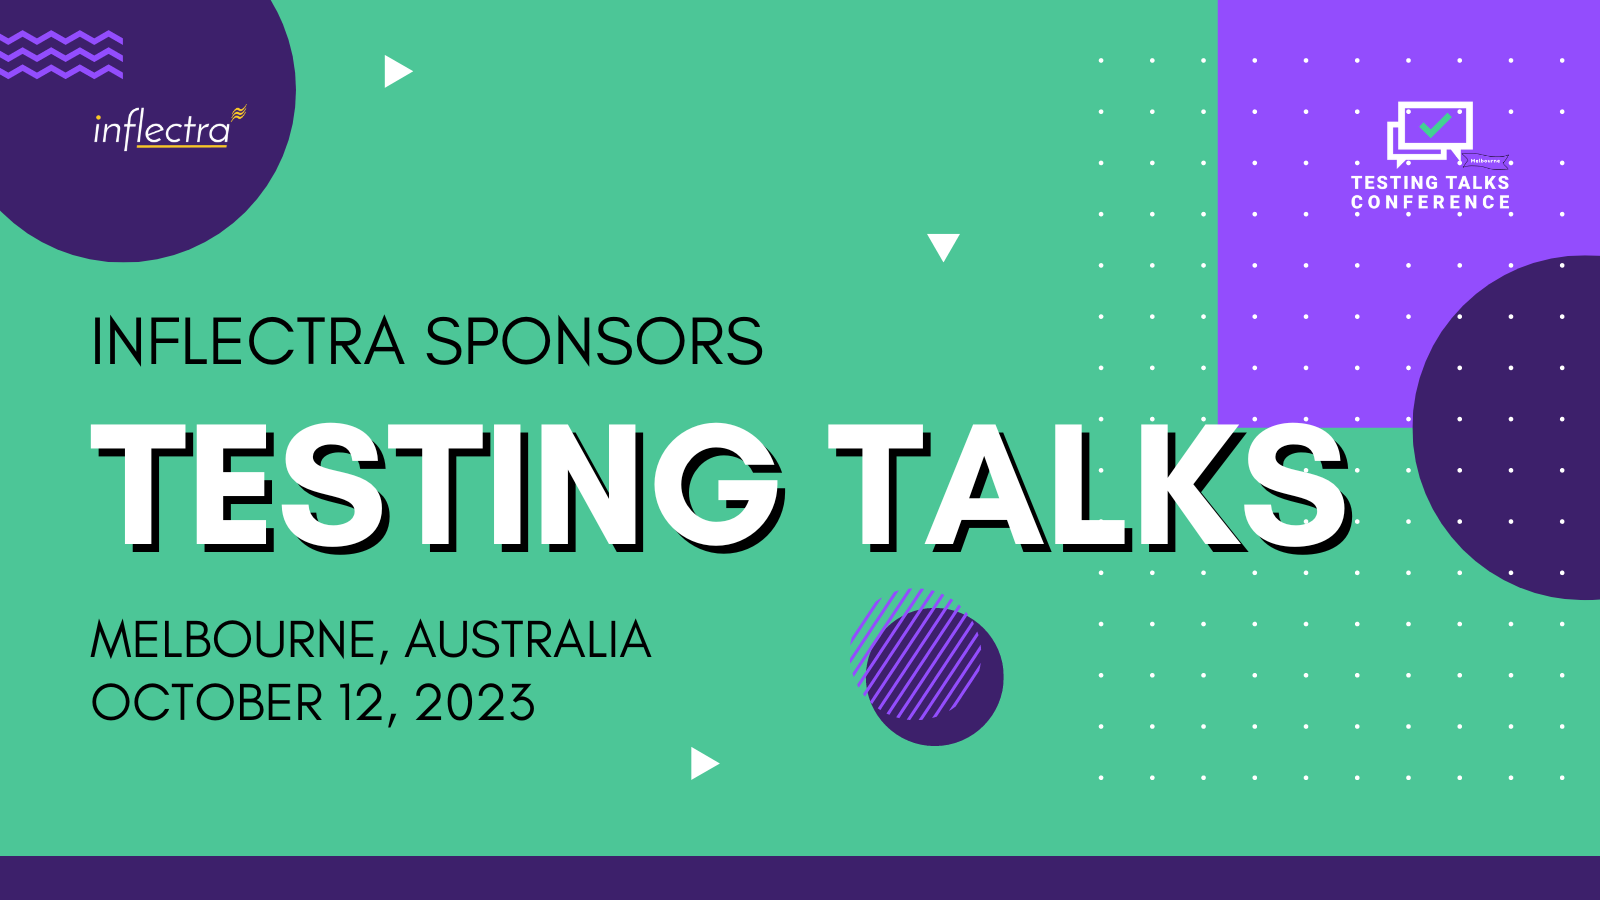 Testing Talks Melbourne Sponsor by Inflectra